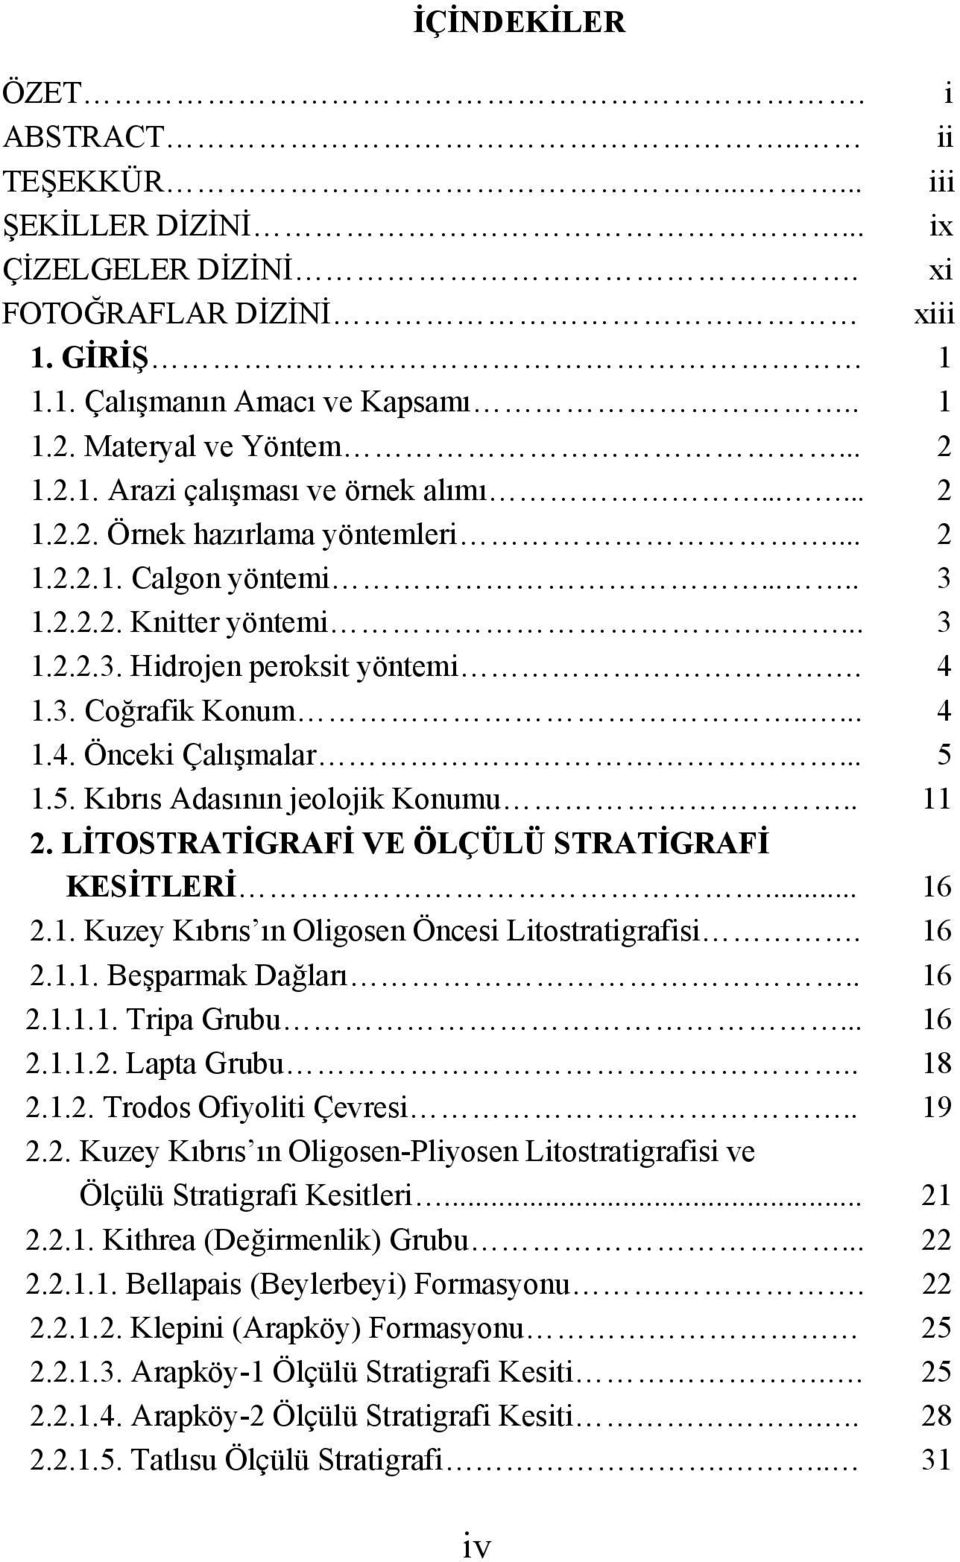 .... 4 1.4. Önceki Çalışmalar... 5 1.5. Kıbrıs Adasının jeolojik Konumu.. 11 2. LİTOSTRATİGRAFİ VE ÖLÇÜLÜ STRATİGRAFİ KESİTLERİ... 16 2.1. Kuzey Kıbrıs ın Oligosen Öncesi Litostratigrafisi. 16 2.1.1. Beşparmak Dağları.